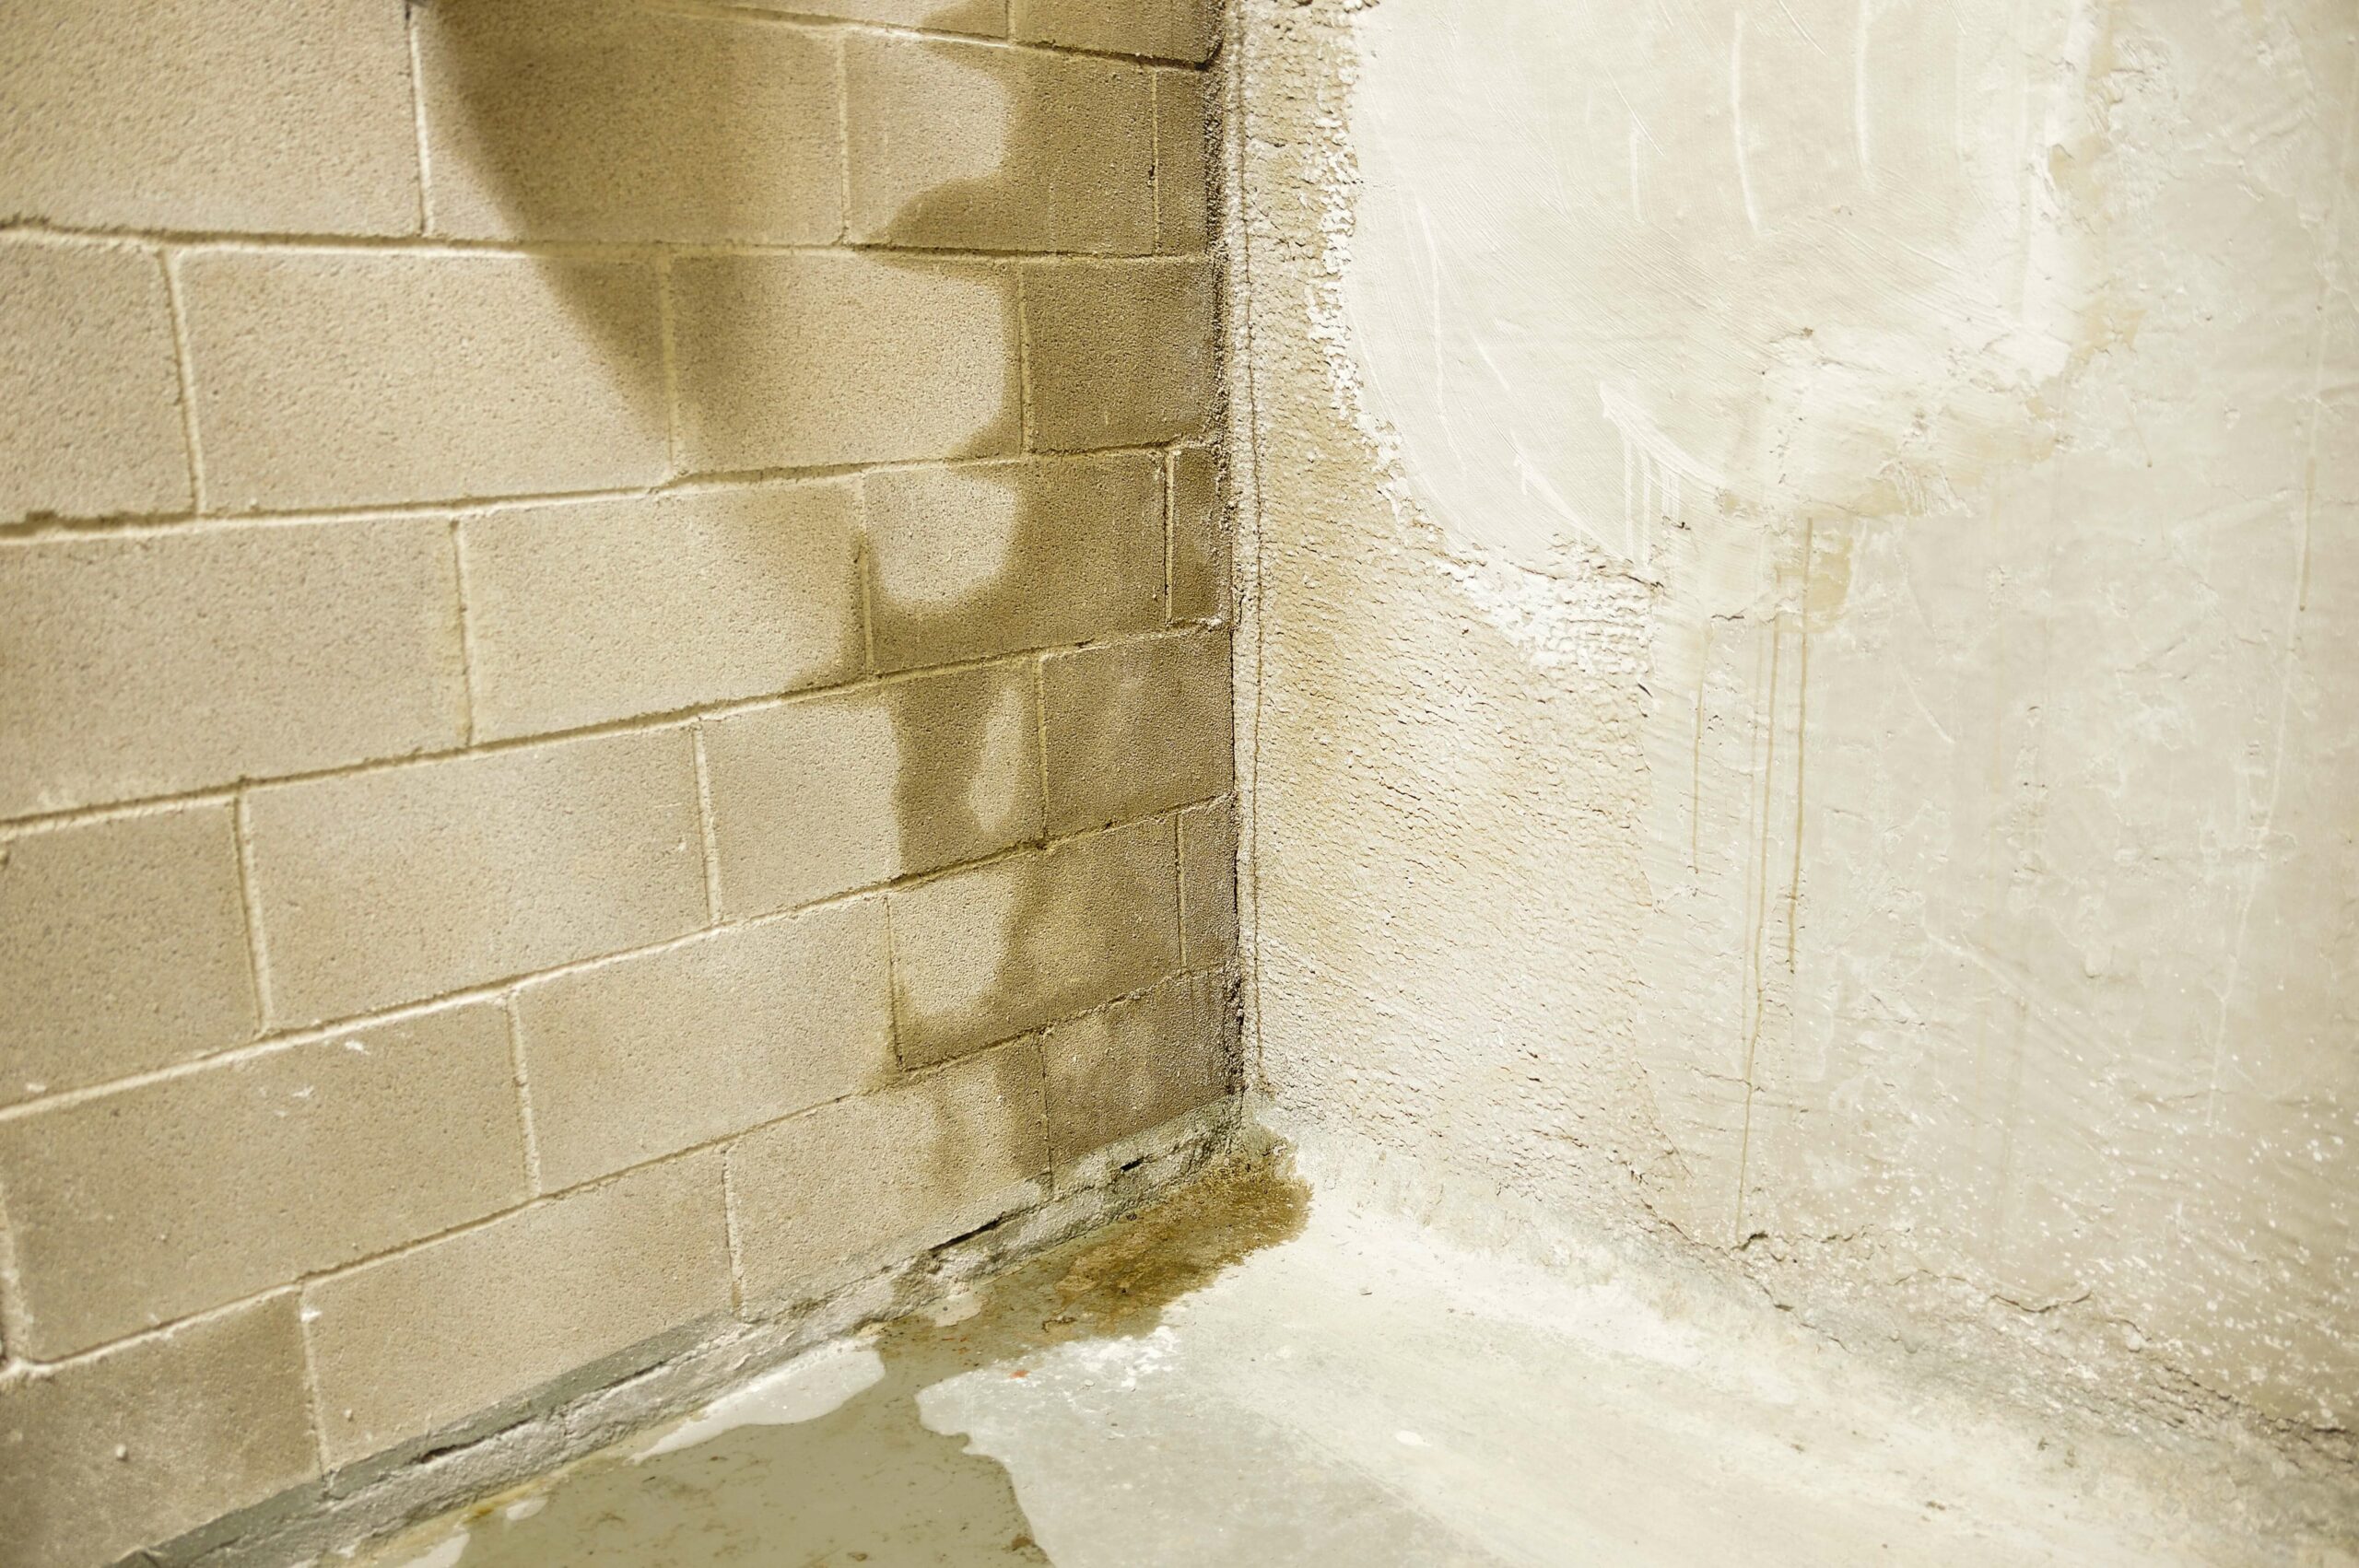 Water leaking in concrete basement